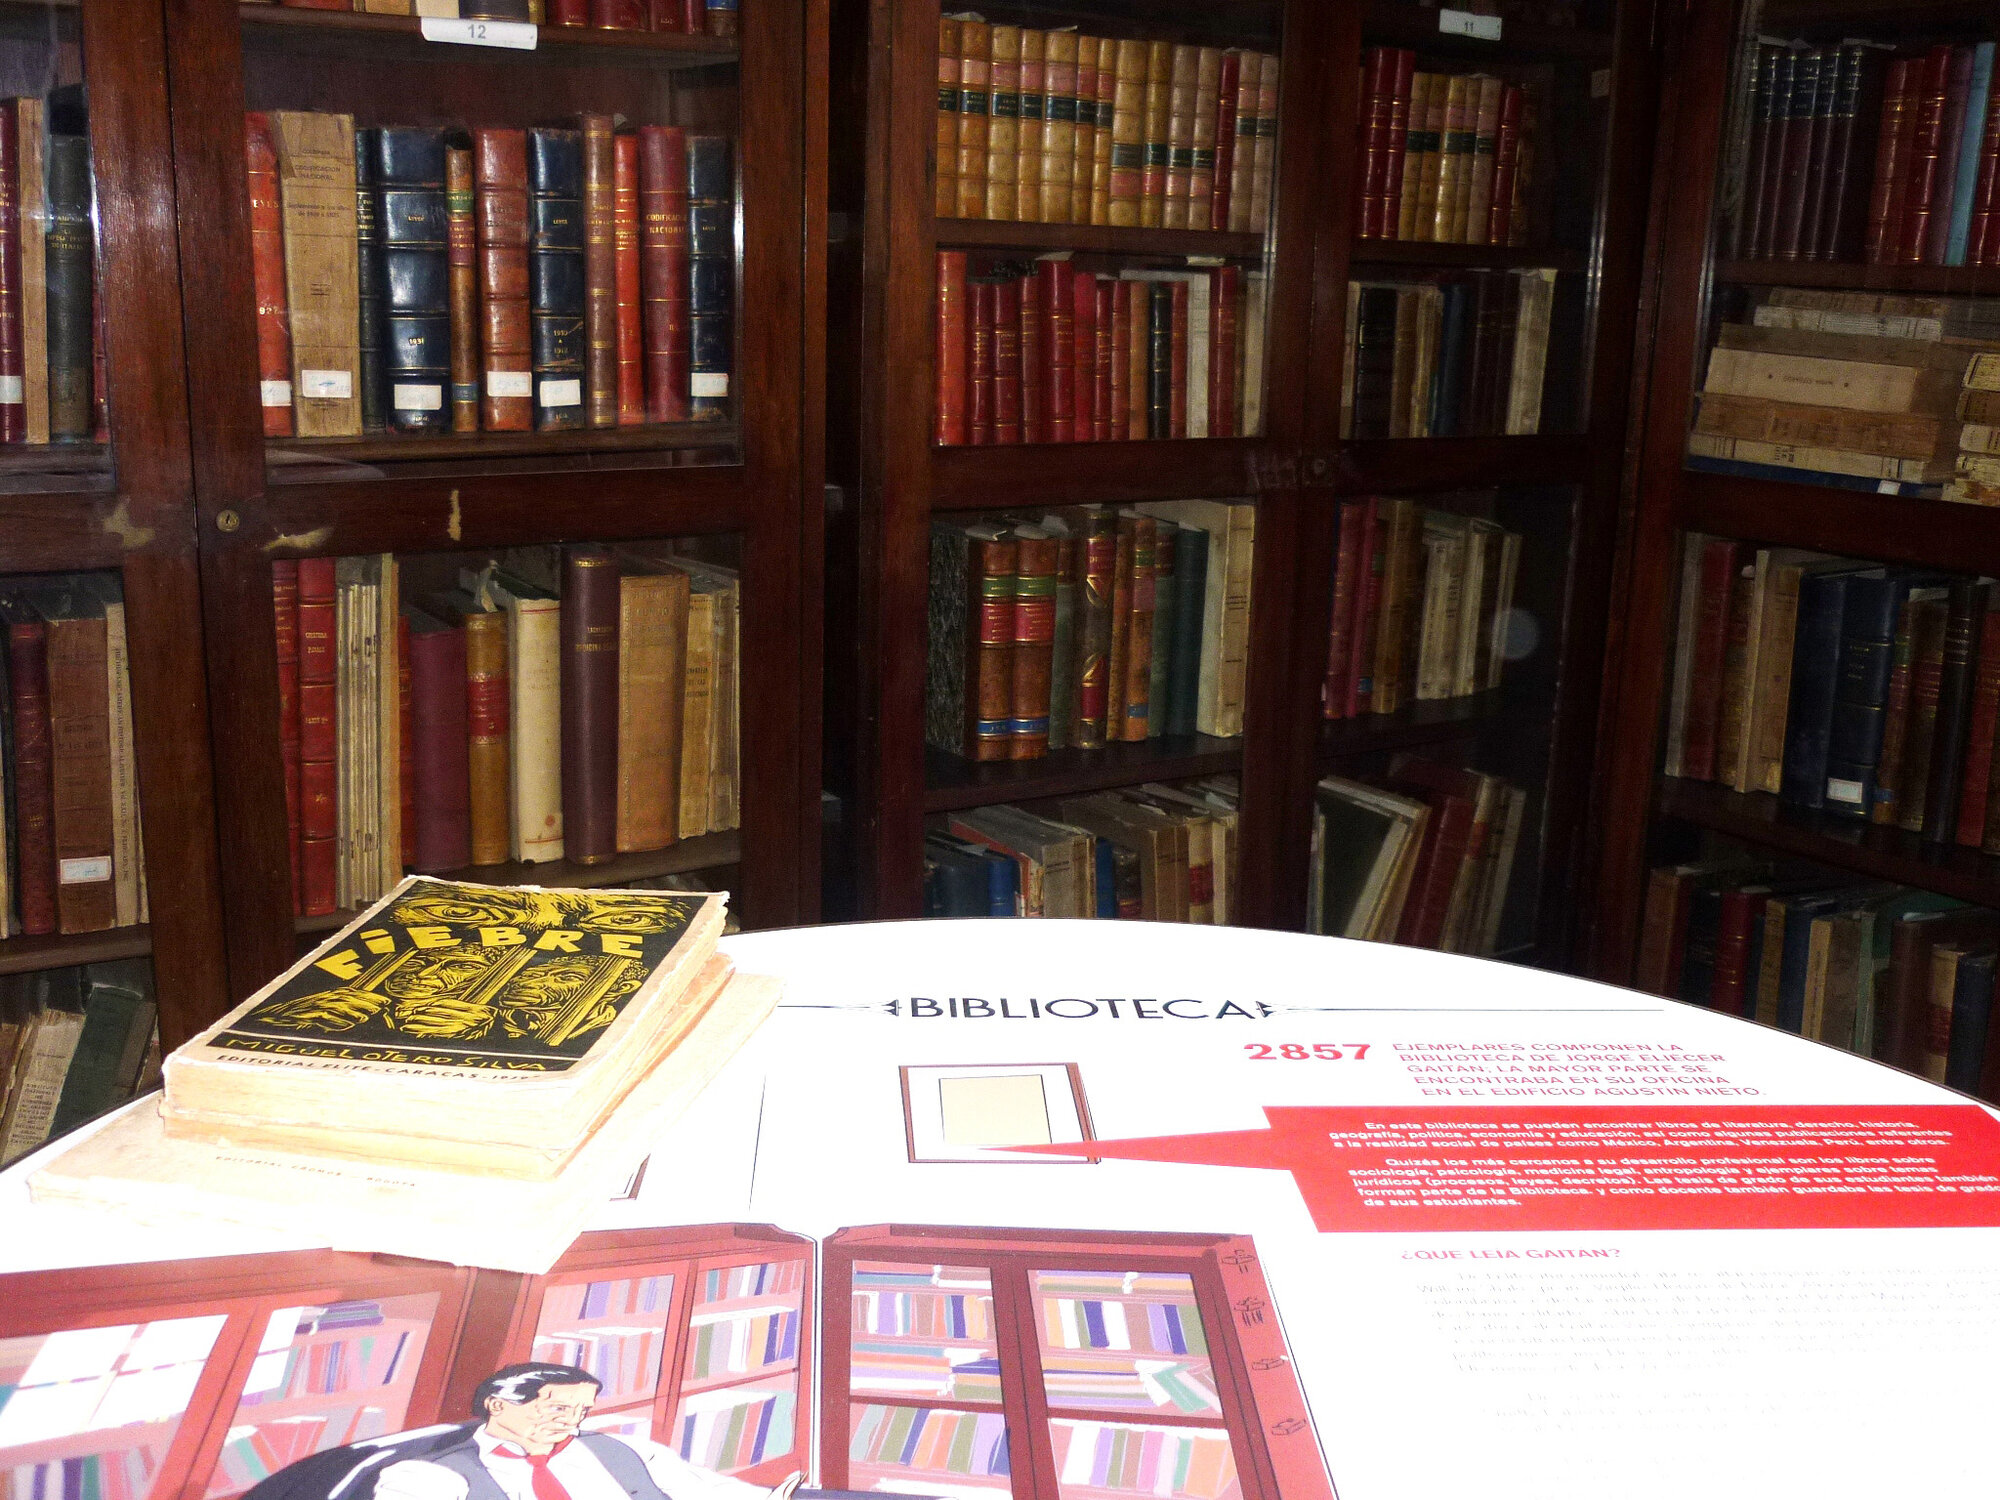 La biblioteca de Gaitán consta de 2857 ejemplares, además de diversos números de revistas, leyes, proyectos de ley y exposiciones de motivos.